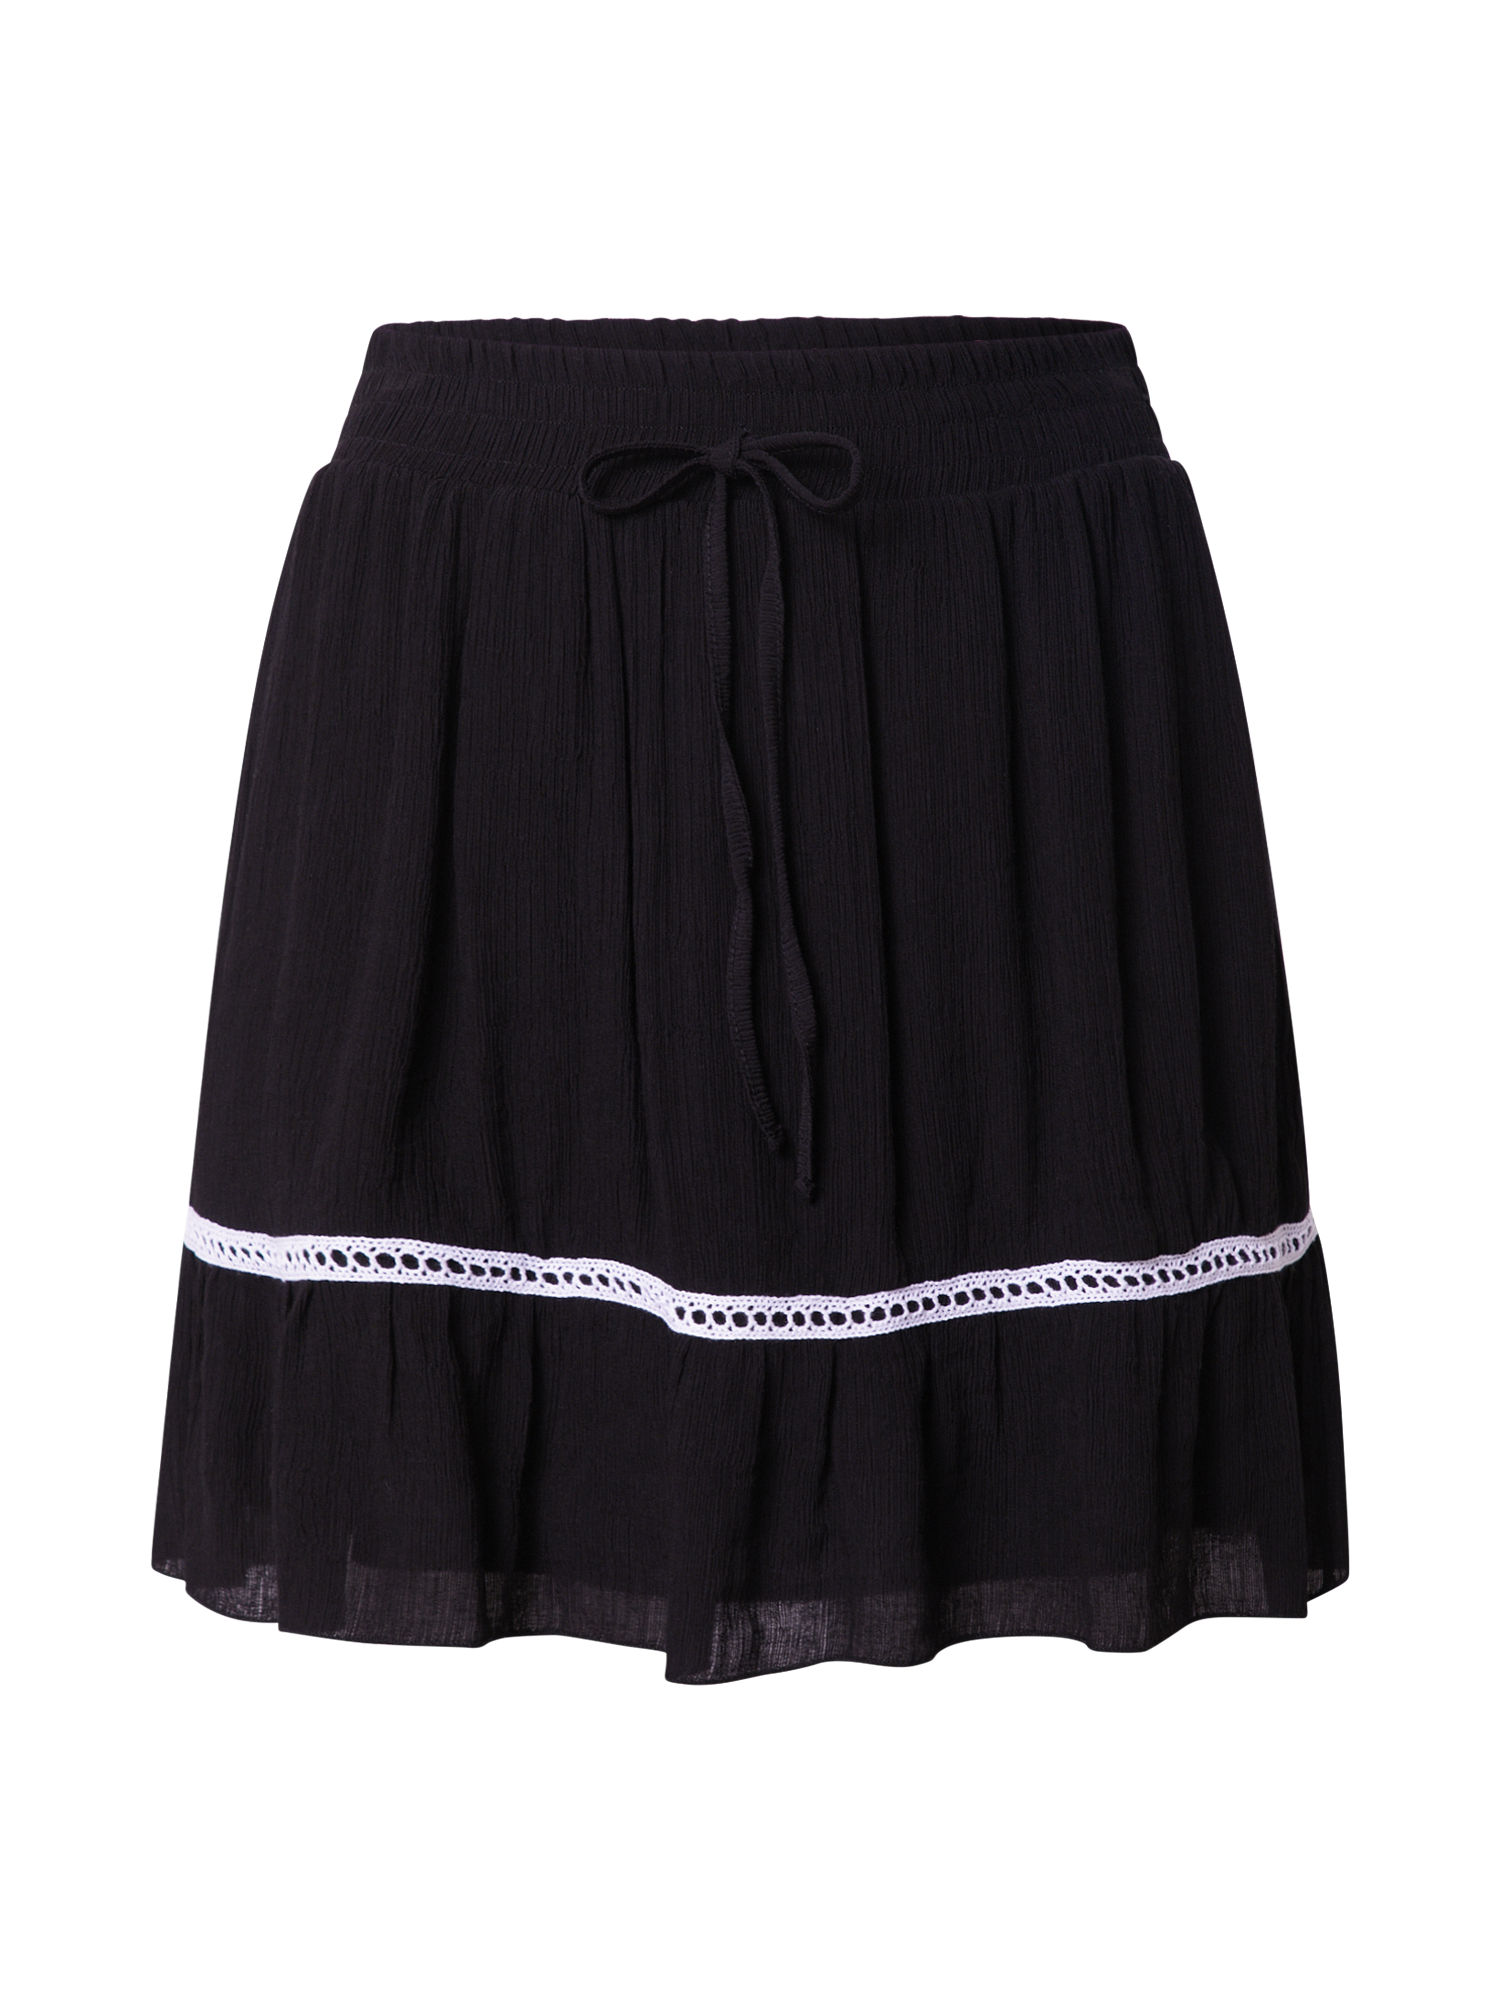 c1cTQ Odzież  Spódnica Lotte w kolorze Czarnym 